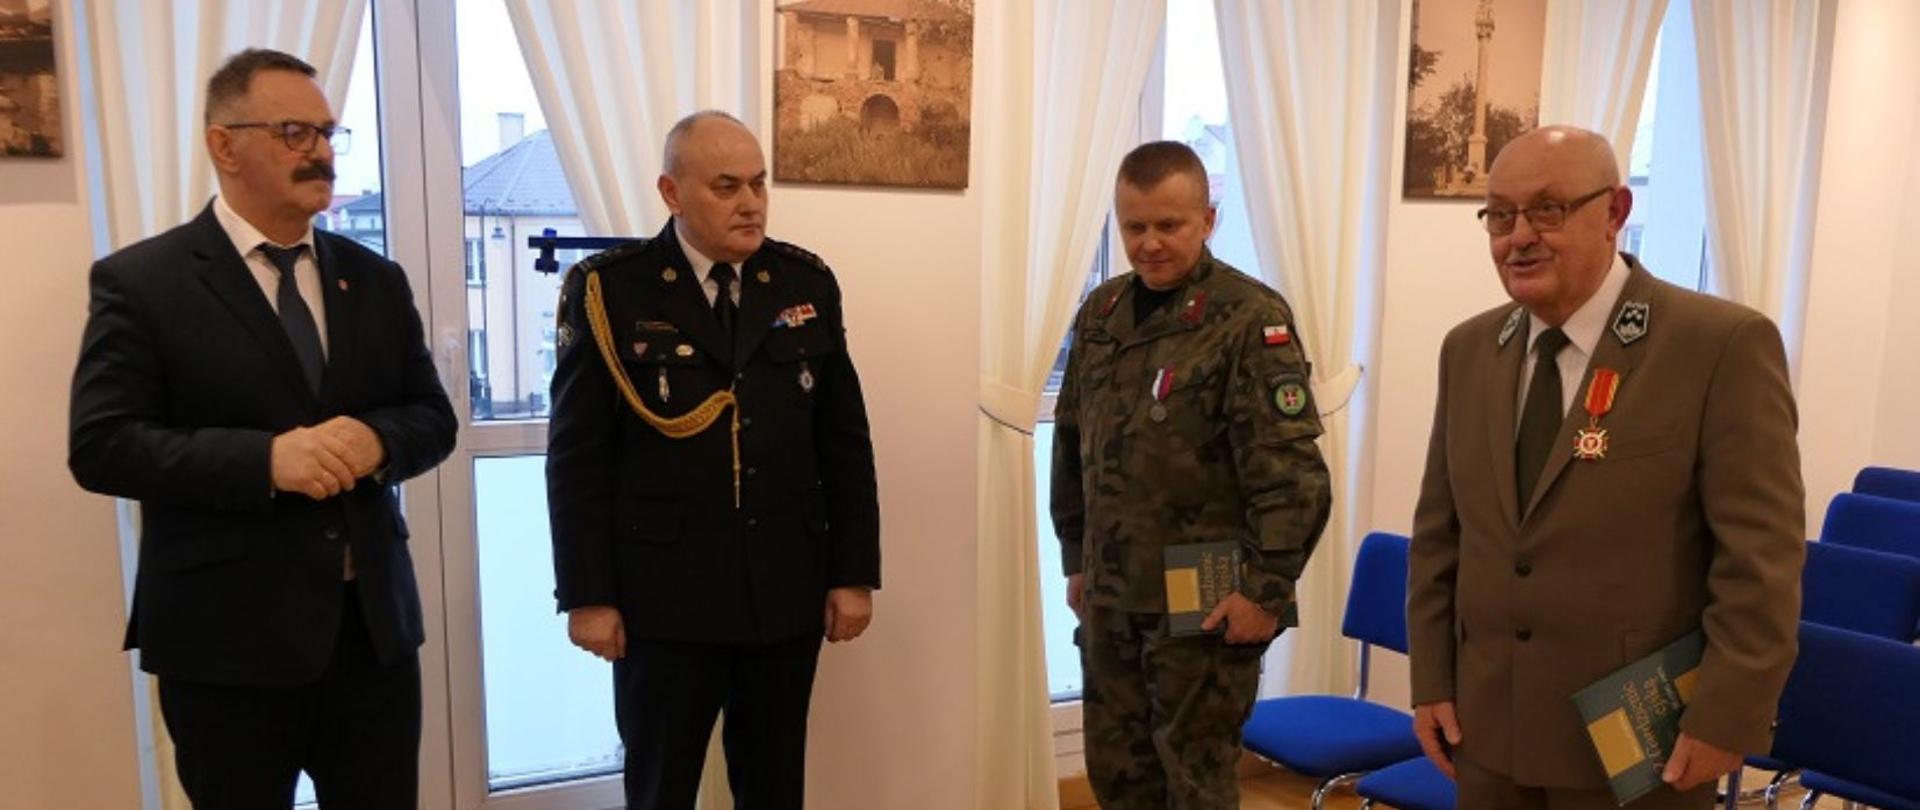 Wyróżnieni medalami za zasługi dziękują za wyróżnienie. Na zdjęciu jest również Starosta Lipski oraz Komendant Powiatowy Państwowej Straży Pożarnej w Lipsku.